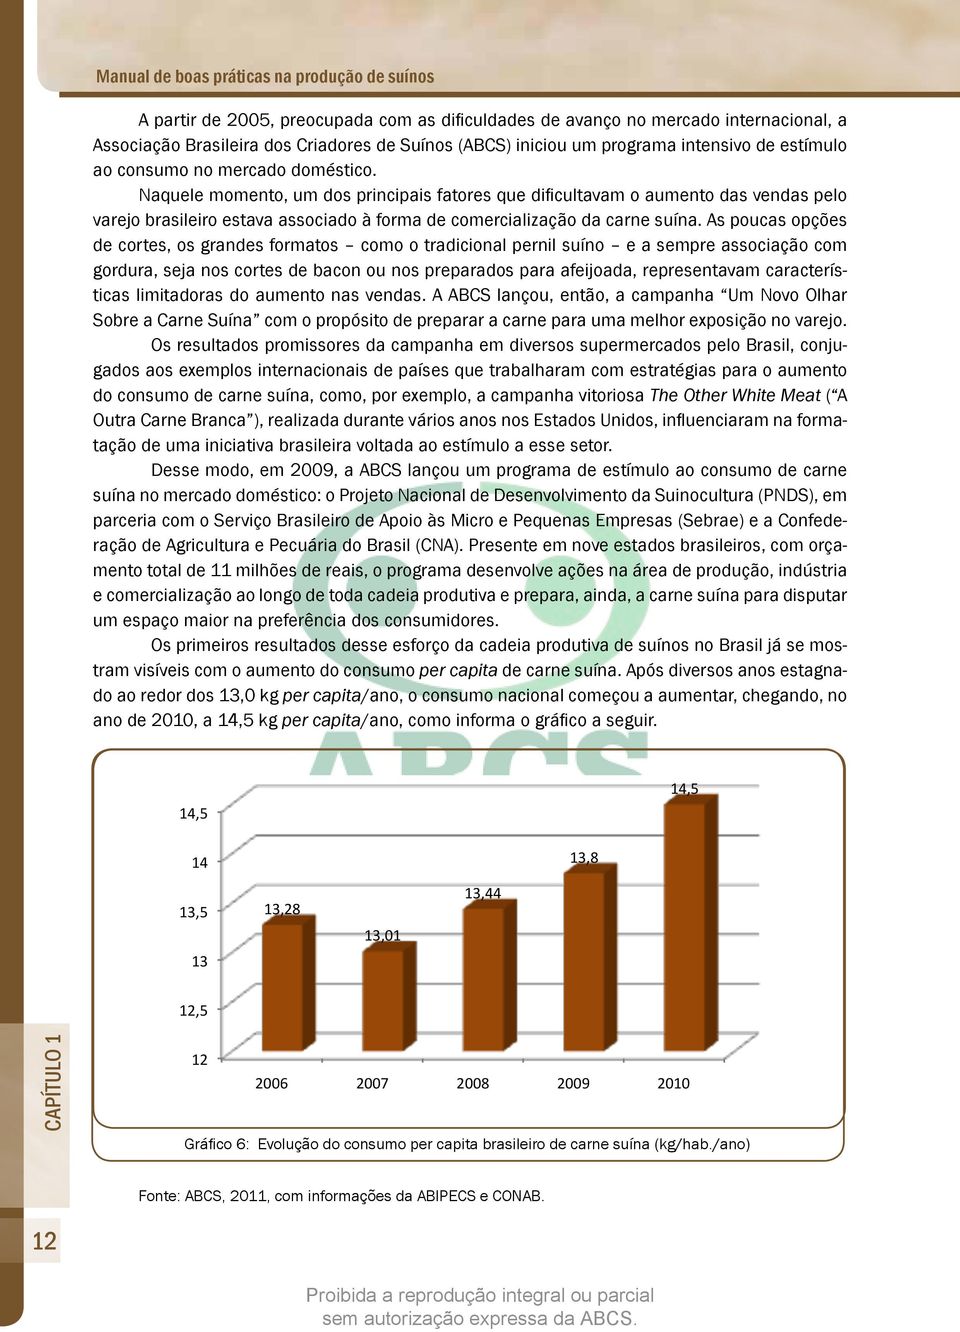 Naquele momento, um dos principais fatores que dificultavam o aumento das vendas pelo varejo brasileiro estava associado à forma de comercialização da carne suína.